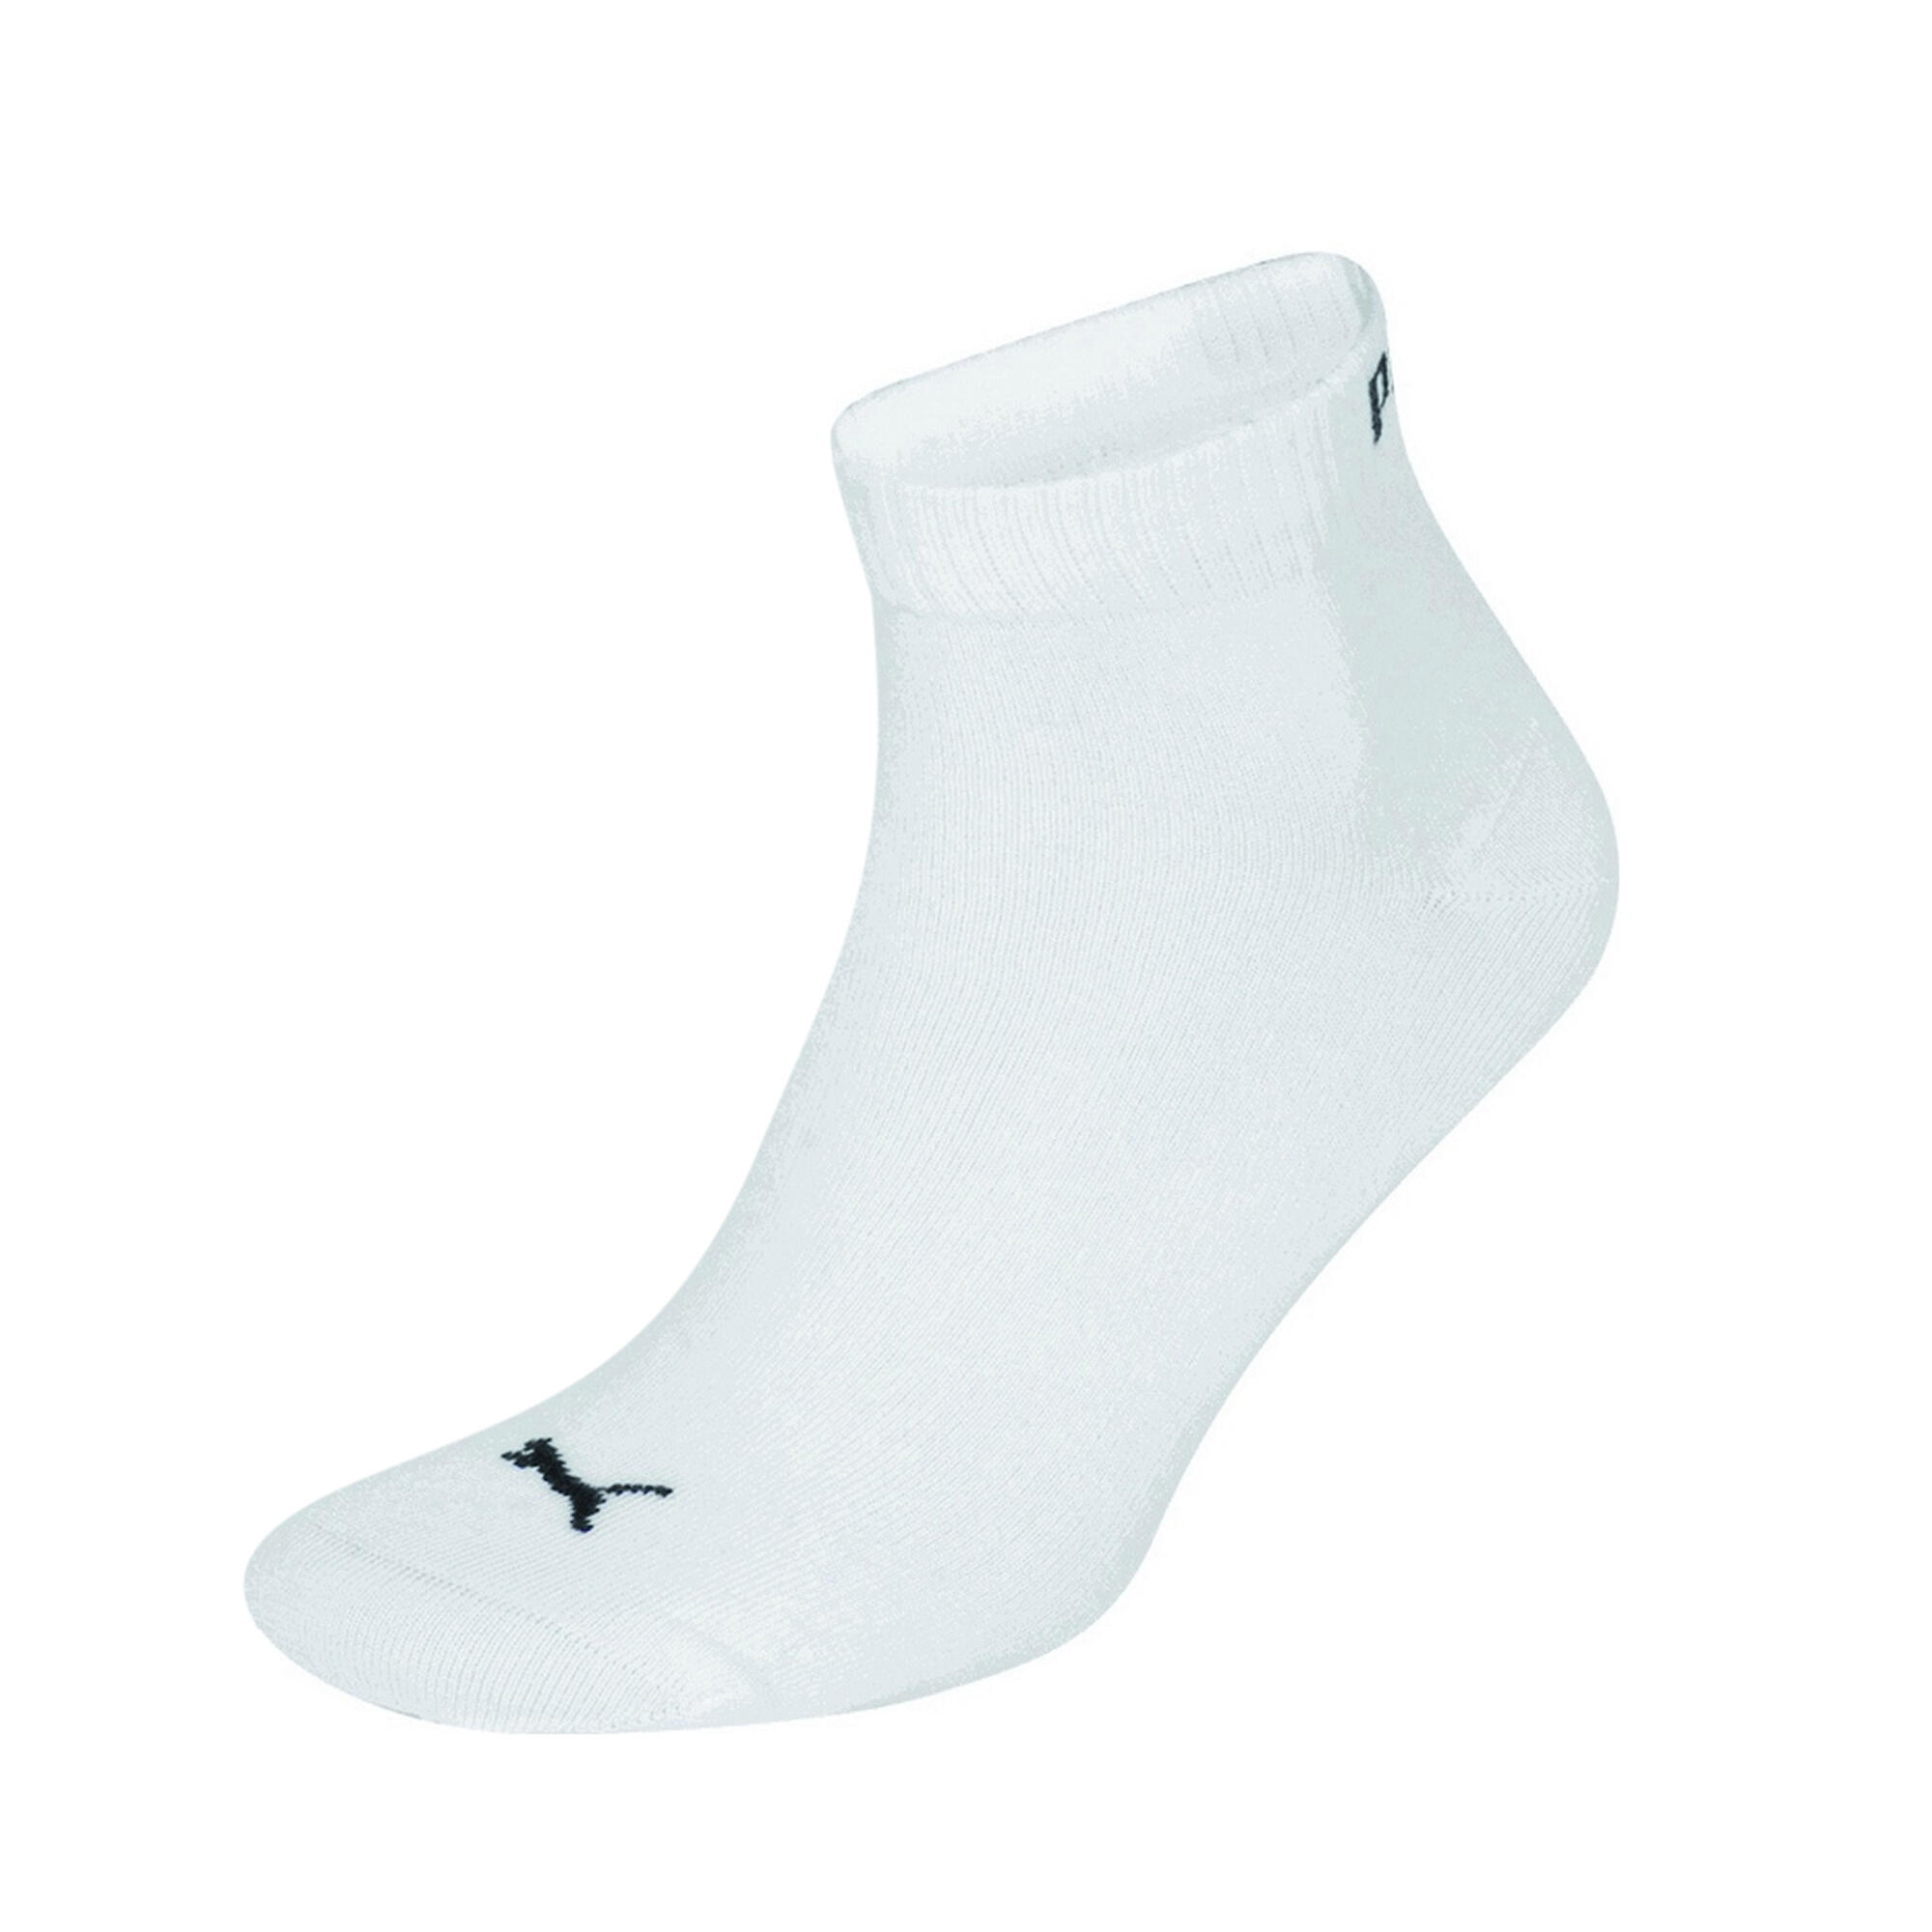 Trainer Socks 3 Pair Pack / Mens Socks (White) 1/3